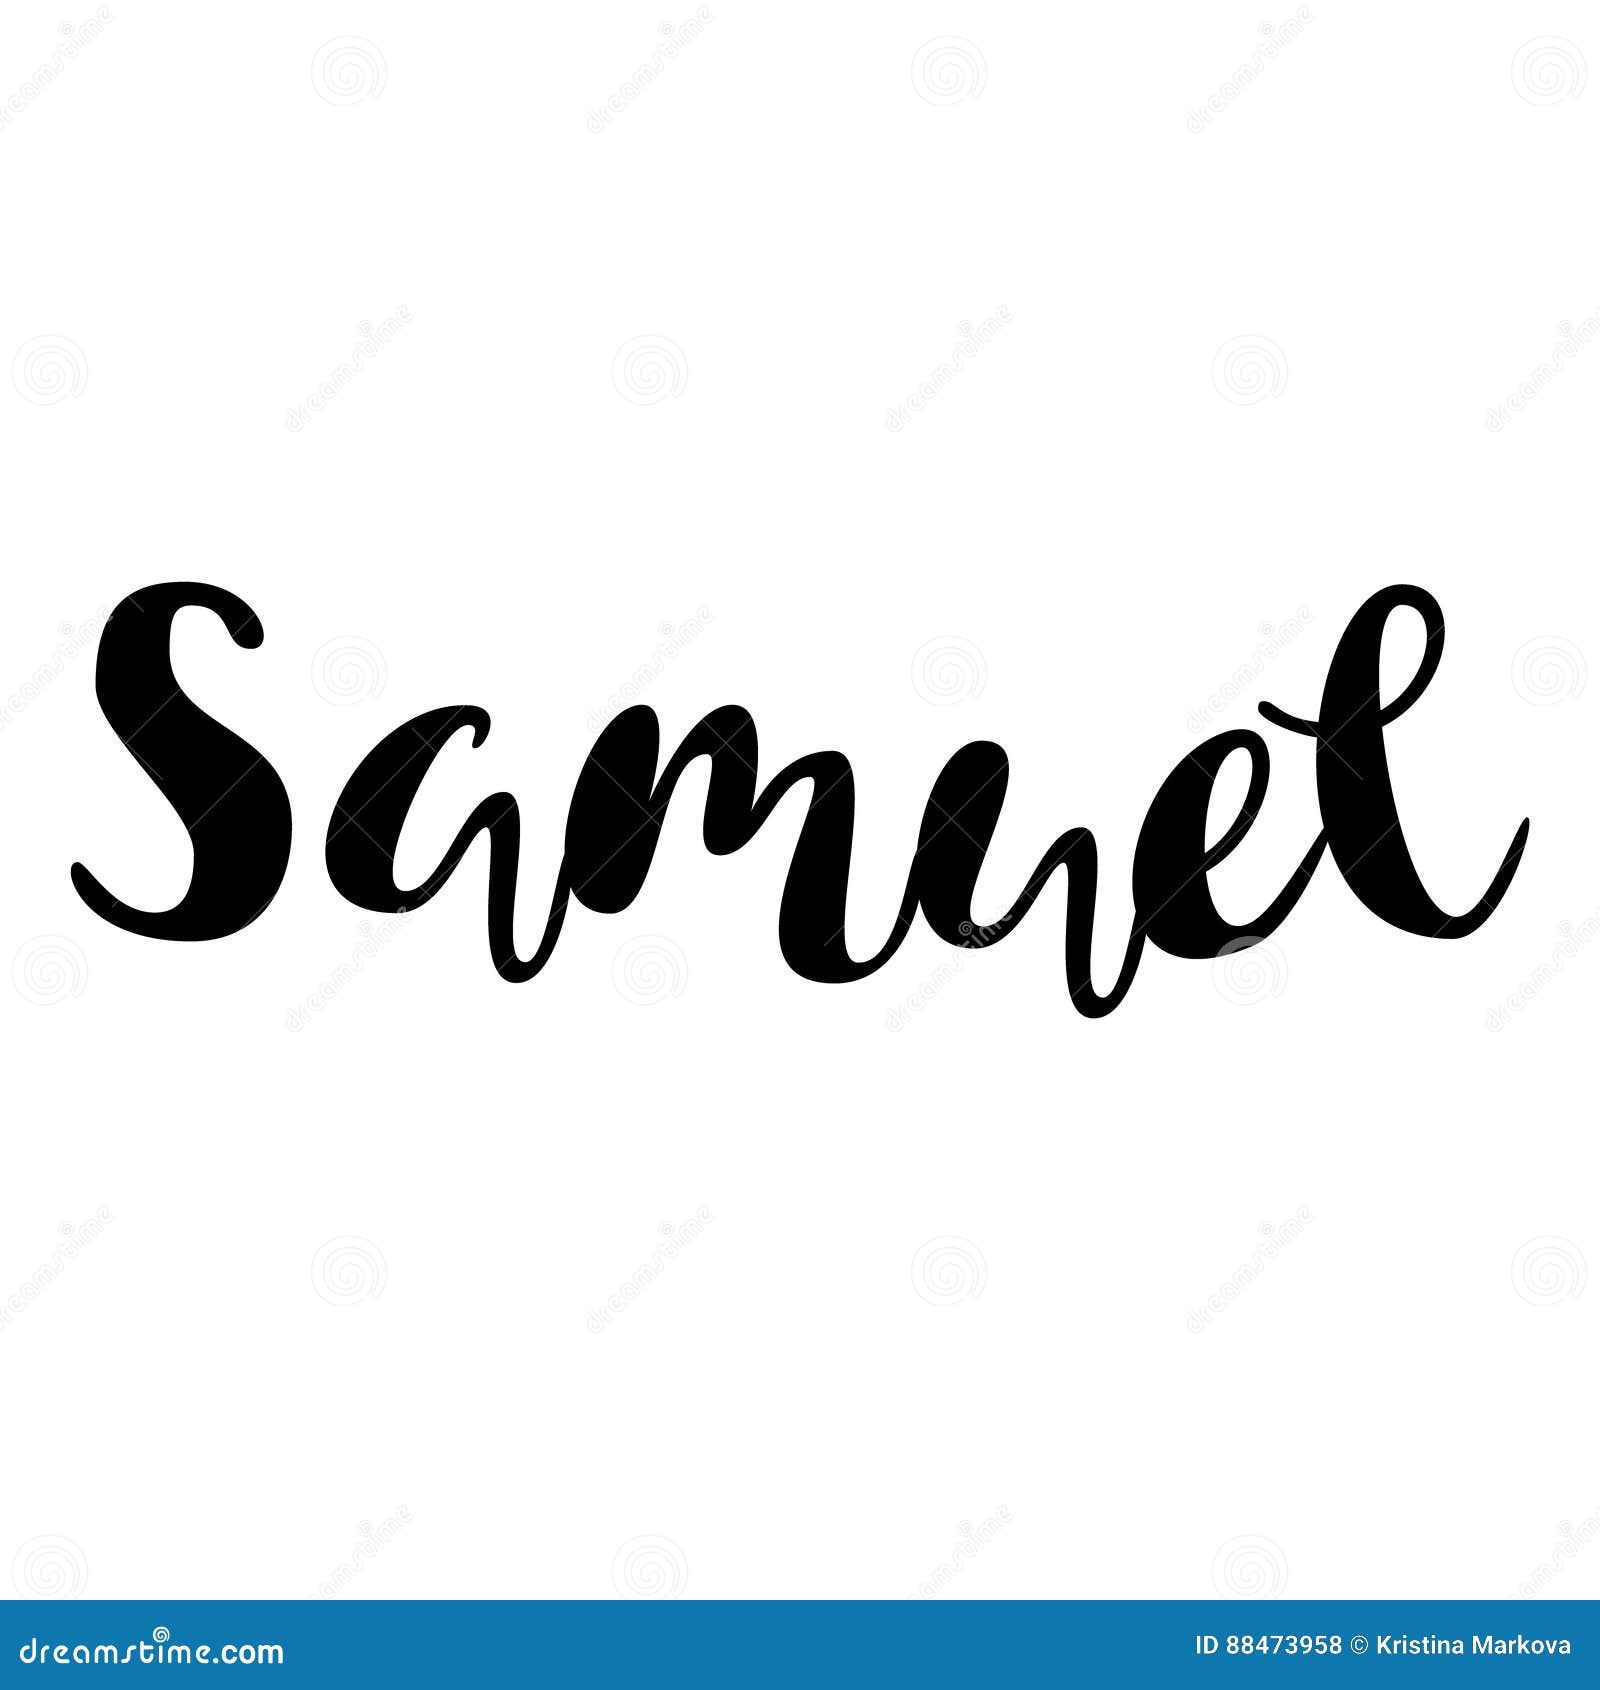 Samuel Name Lettering Tinsels Vector Illustration | CartoonDealer.com ...